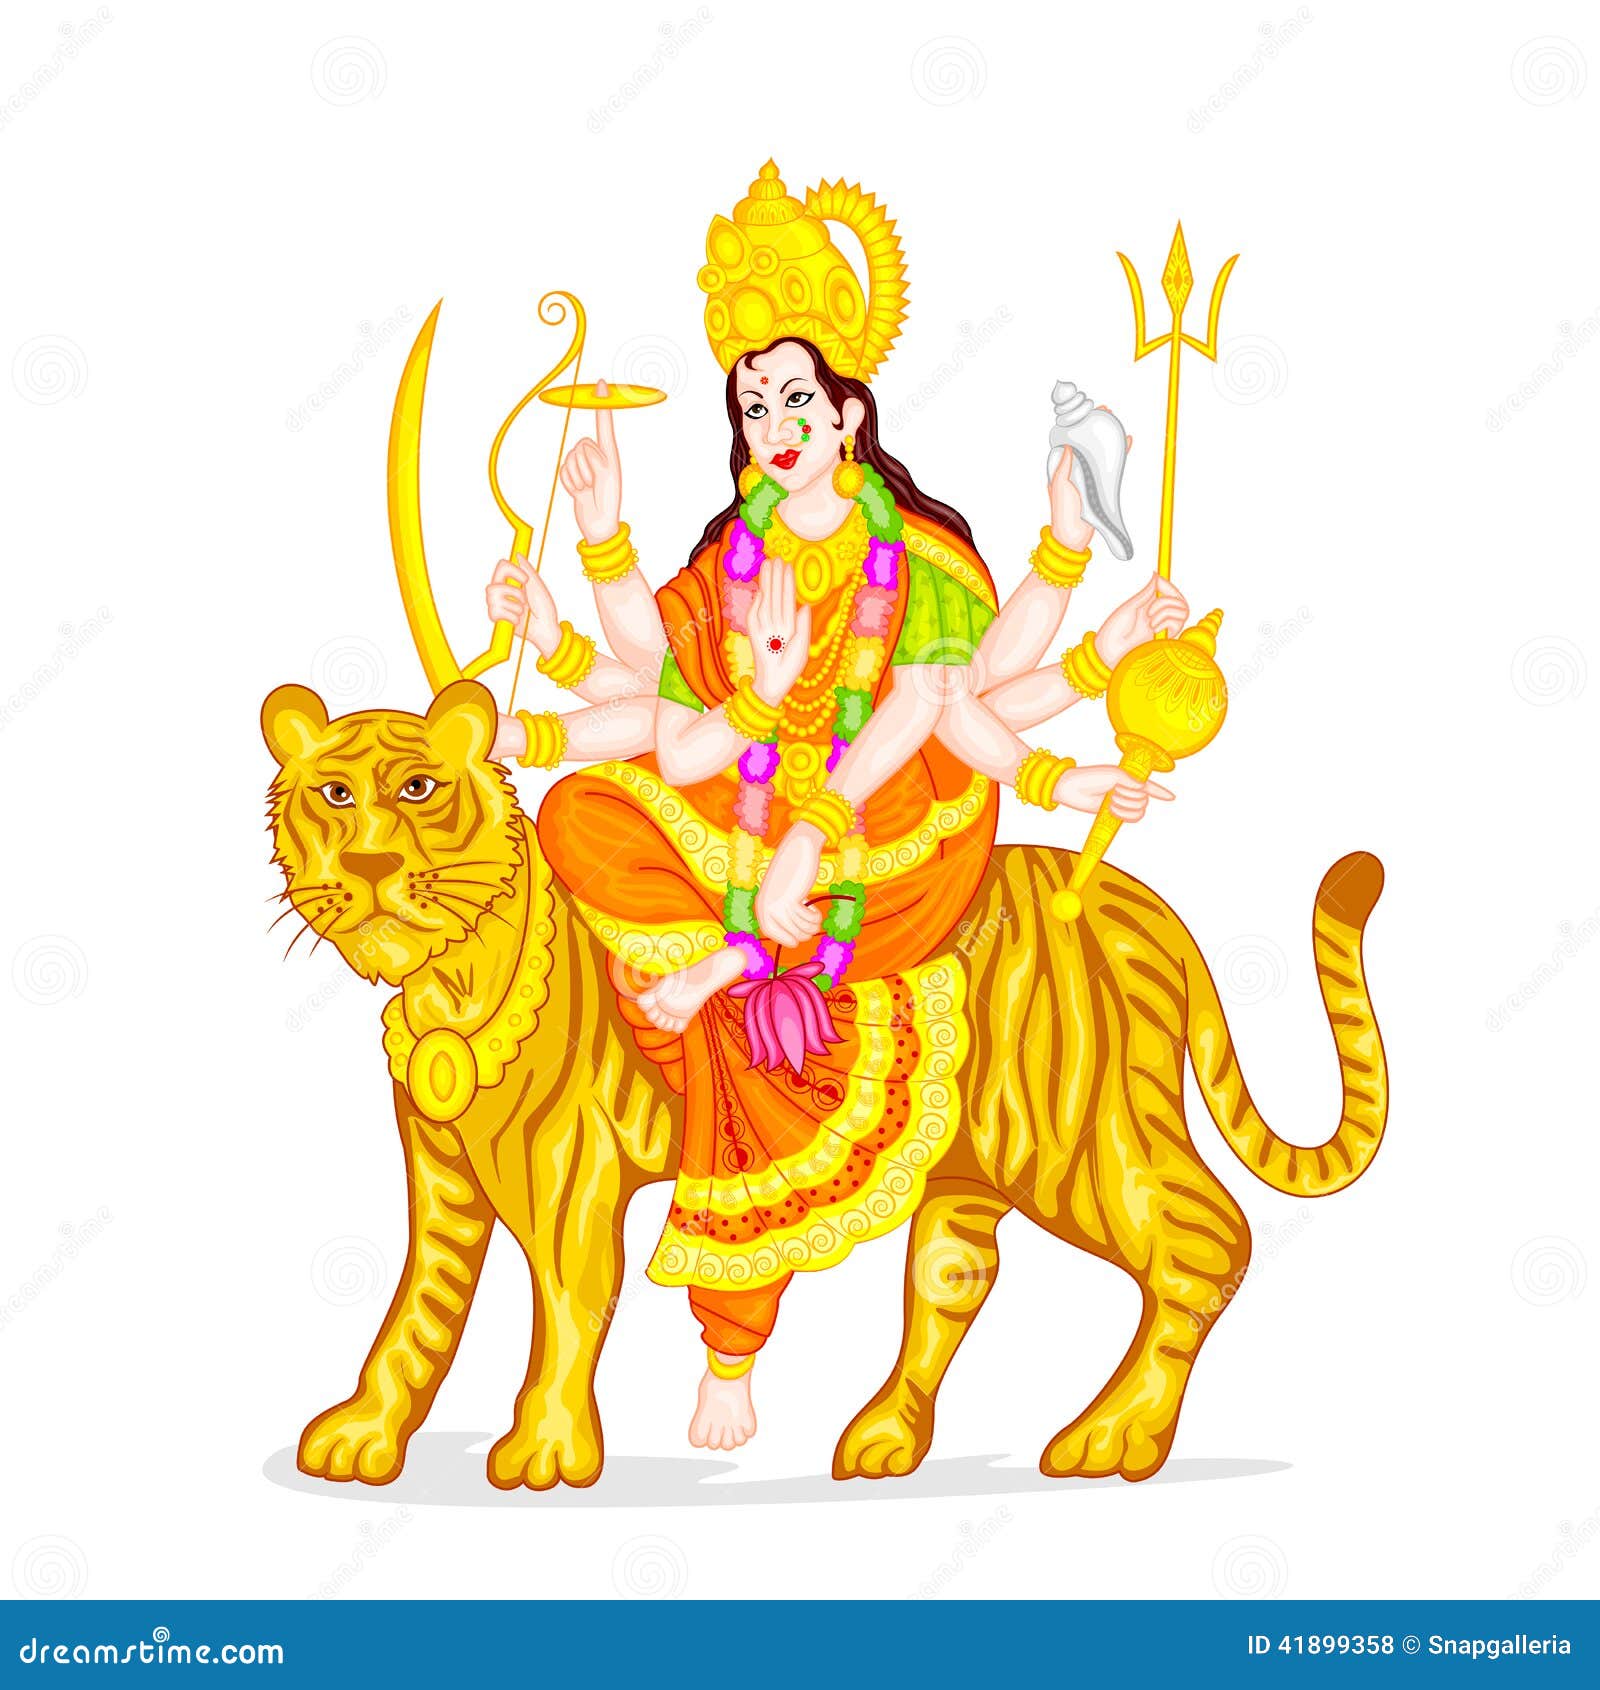 Goddess Durga stock vector. Illustration of india, mythology - 41899358